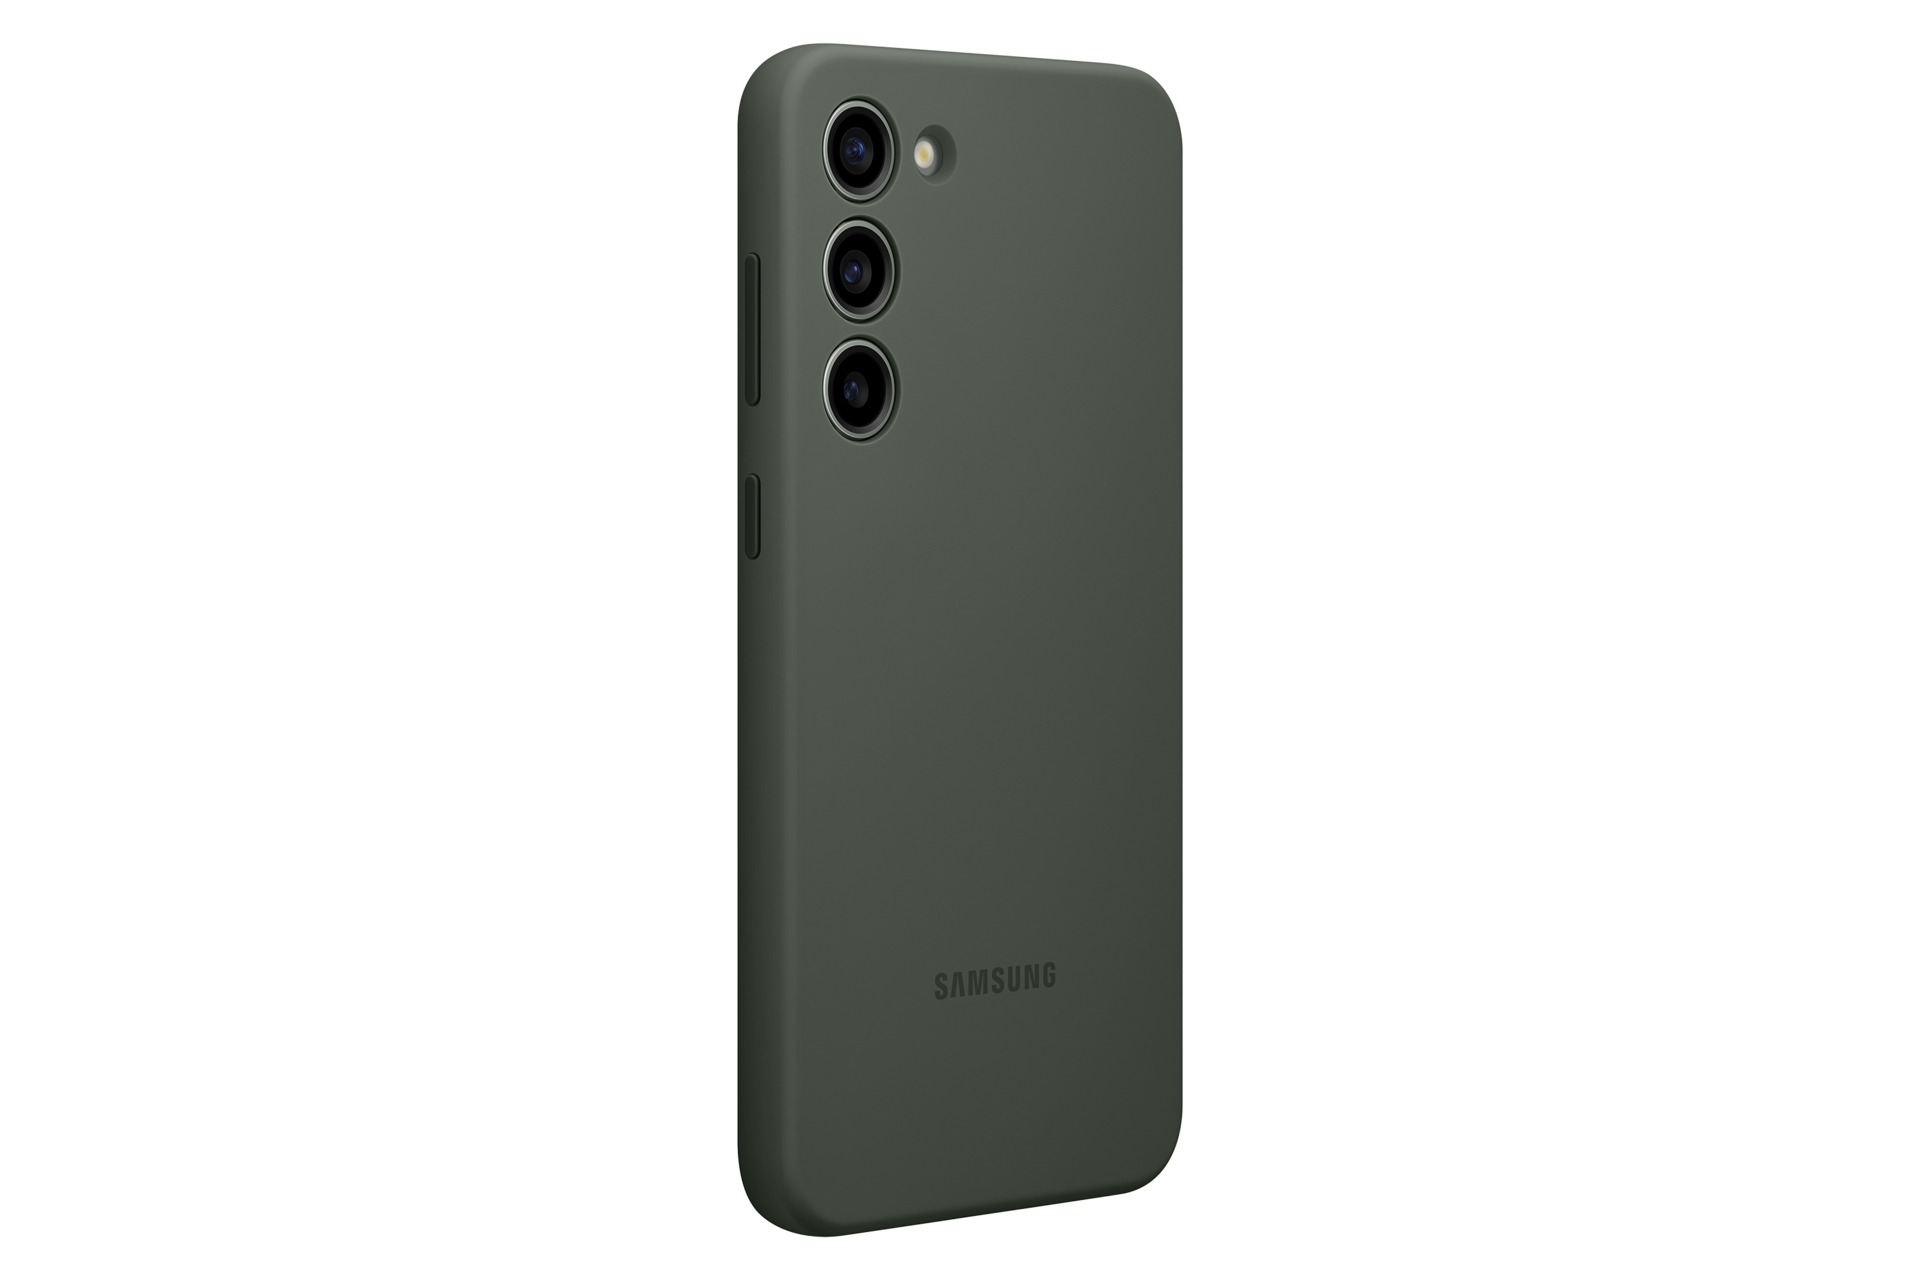 Funda Para Samsung A22 5g. De Silicona Color Negro Liso